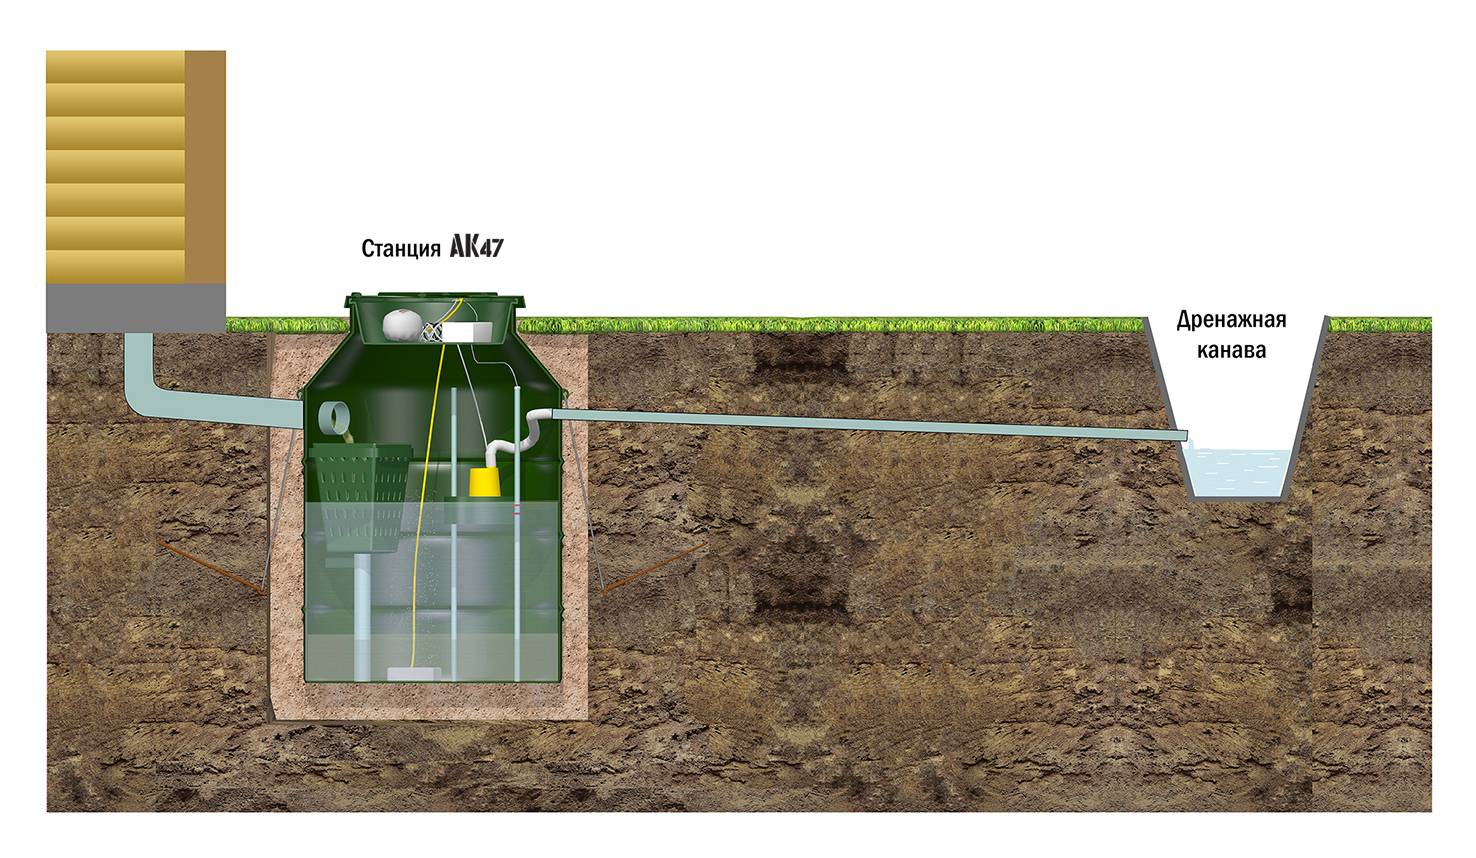 Автономная система очистки стоков ак 47, удобная канализация для любого грунта